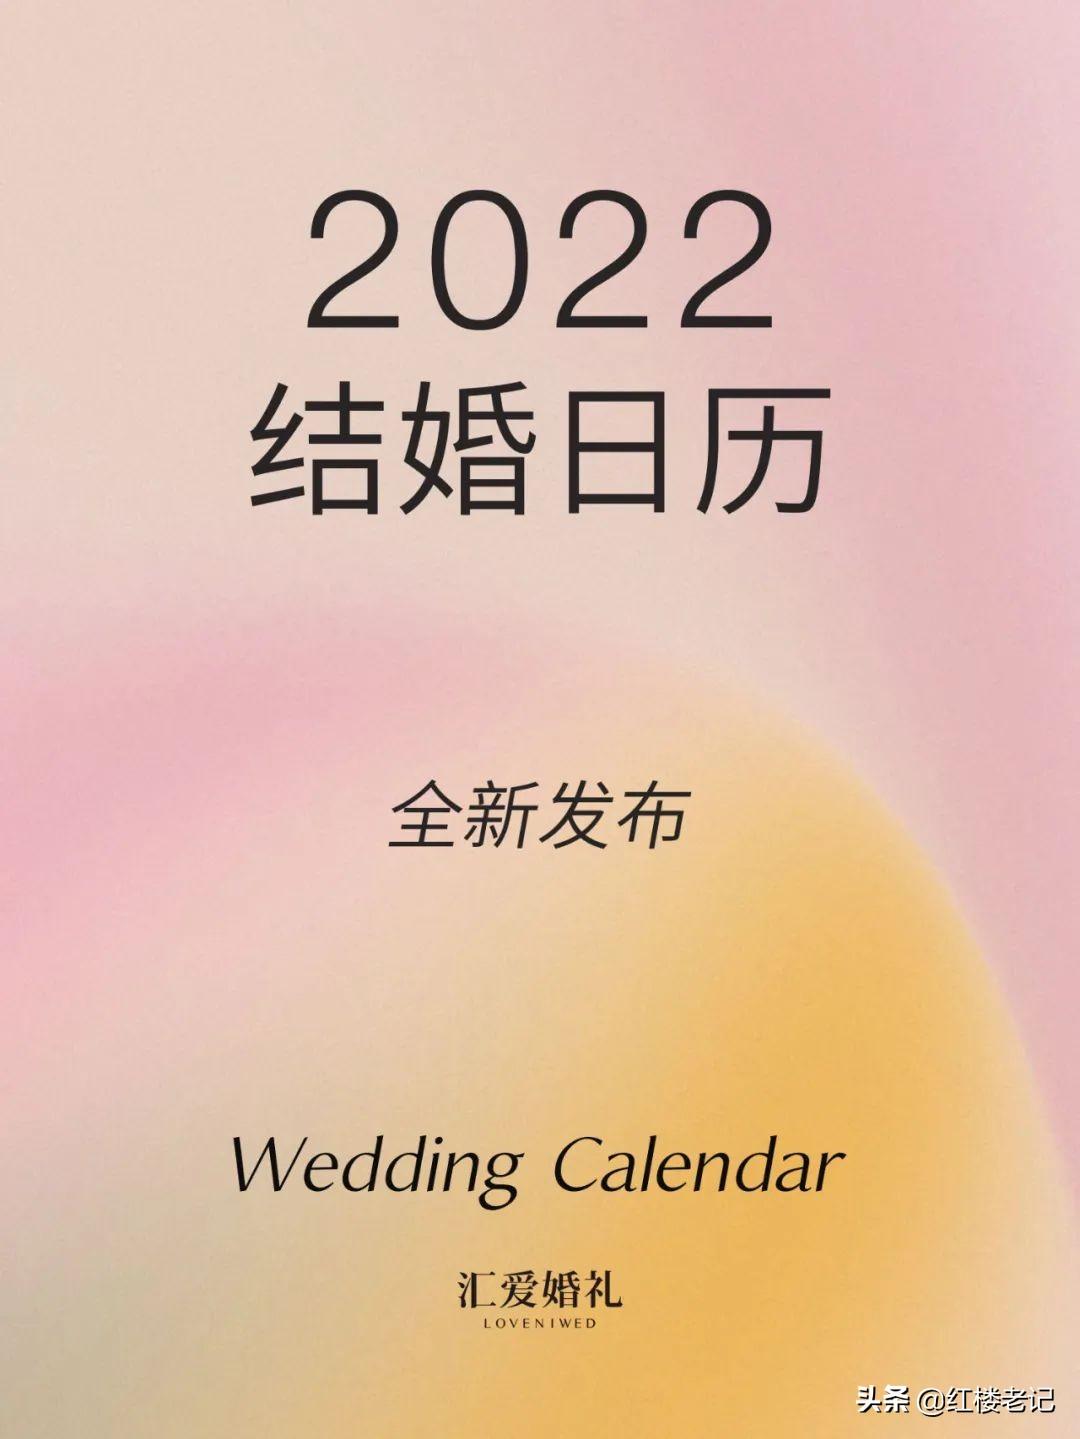 万年历结婚吉日(2022年结婚日程表大全)